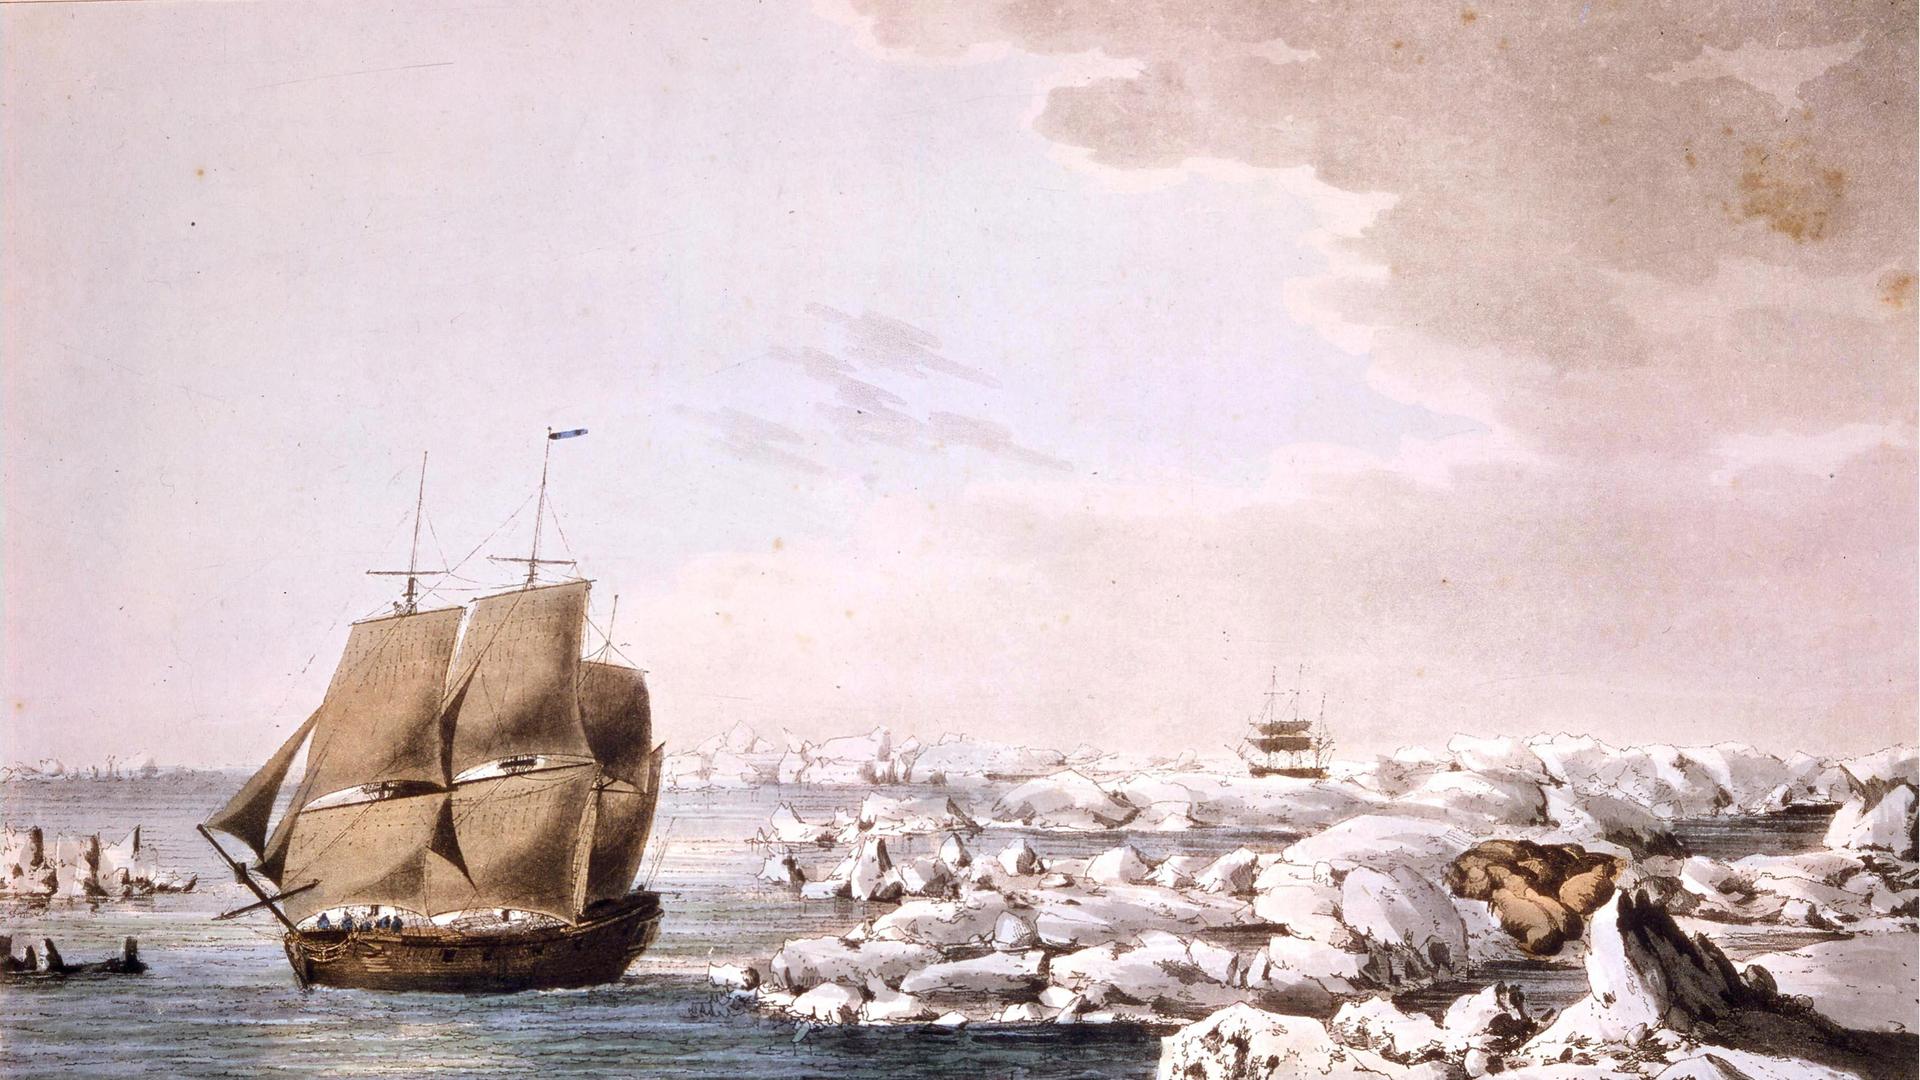 Die HMS Resolution, James Cooks Segelschiff bei seiner zweiten Südseereise, schlägt sich durchs Eis. Mit der vom Eis eingeschlossenen Discovery im Hintergrund: Gemälde von James Cooks Expeditionsmaler John Webber 